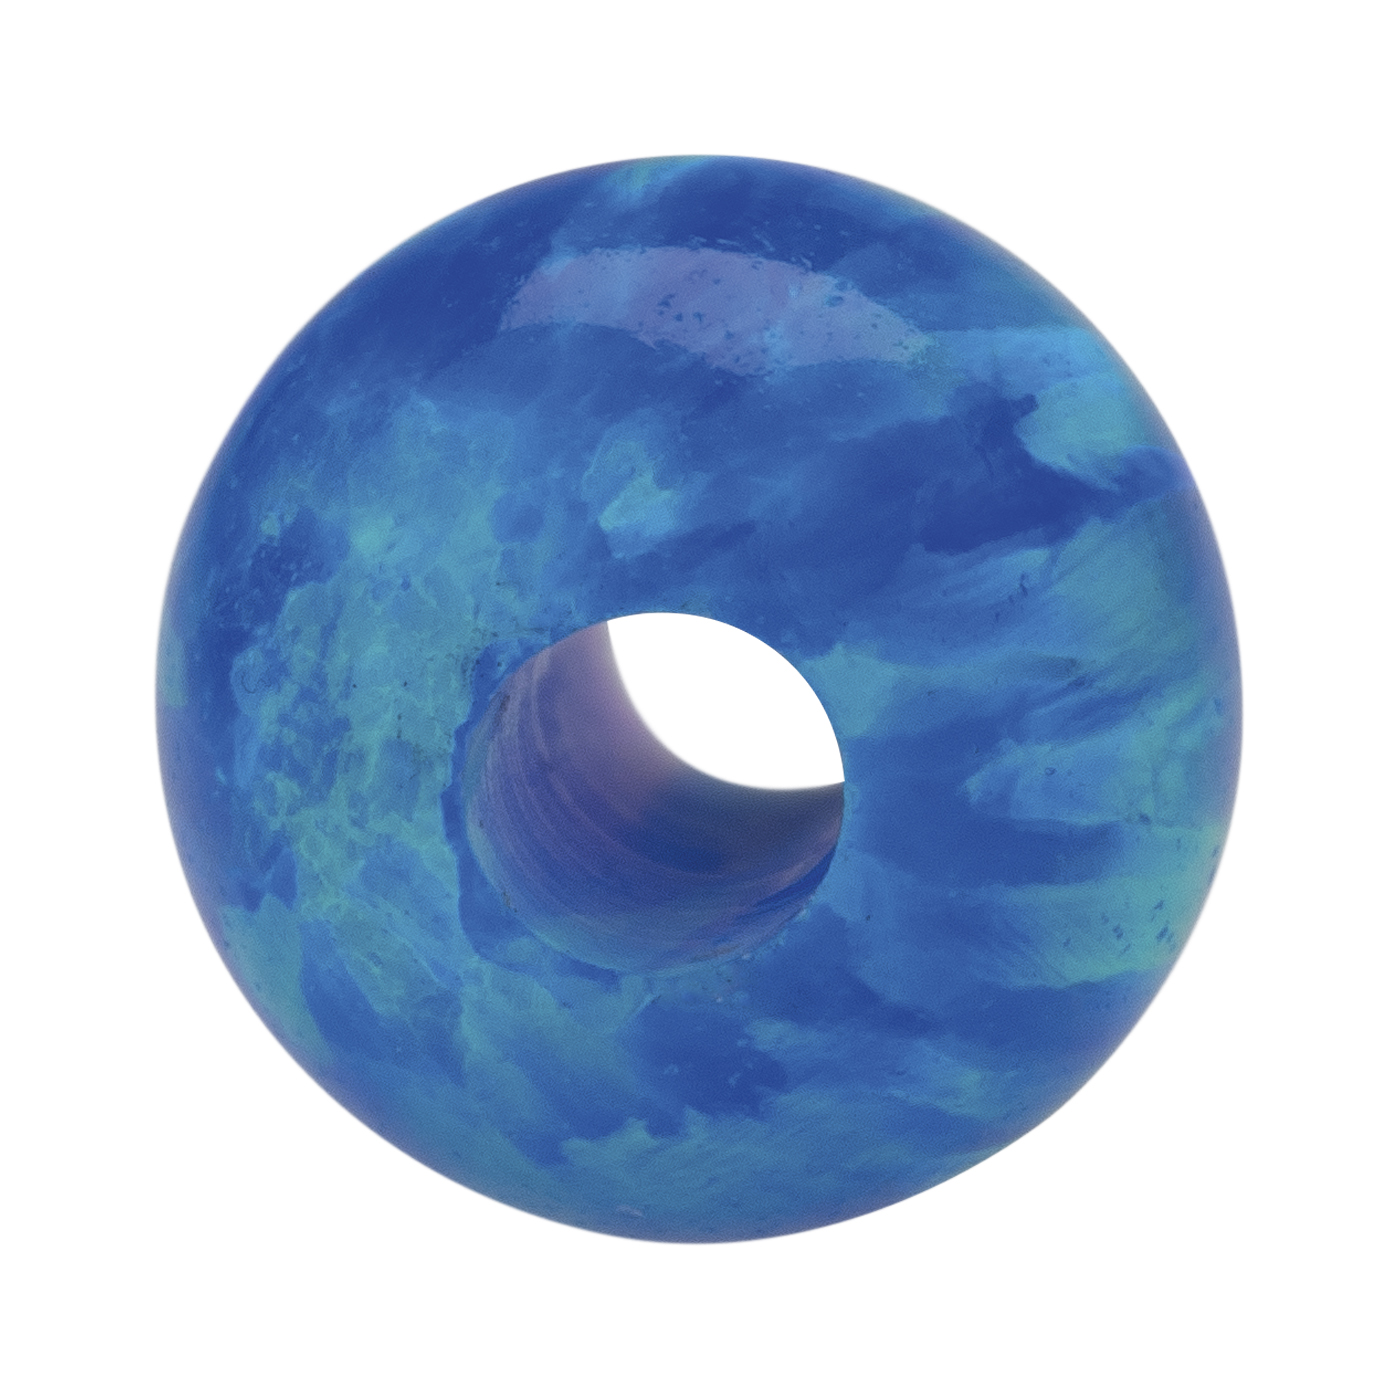 Opal Imitation Ball, Blue, ø 12 mm, Drilled Through - 1 piece